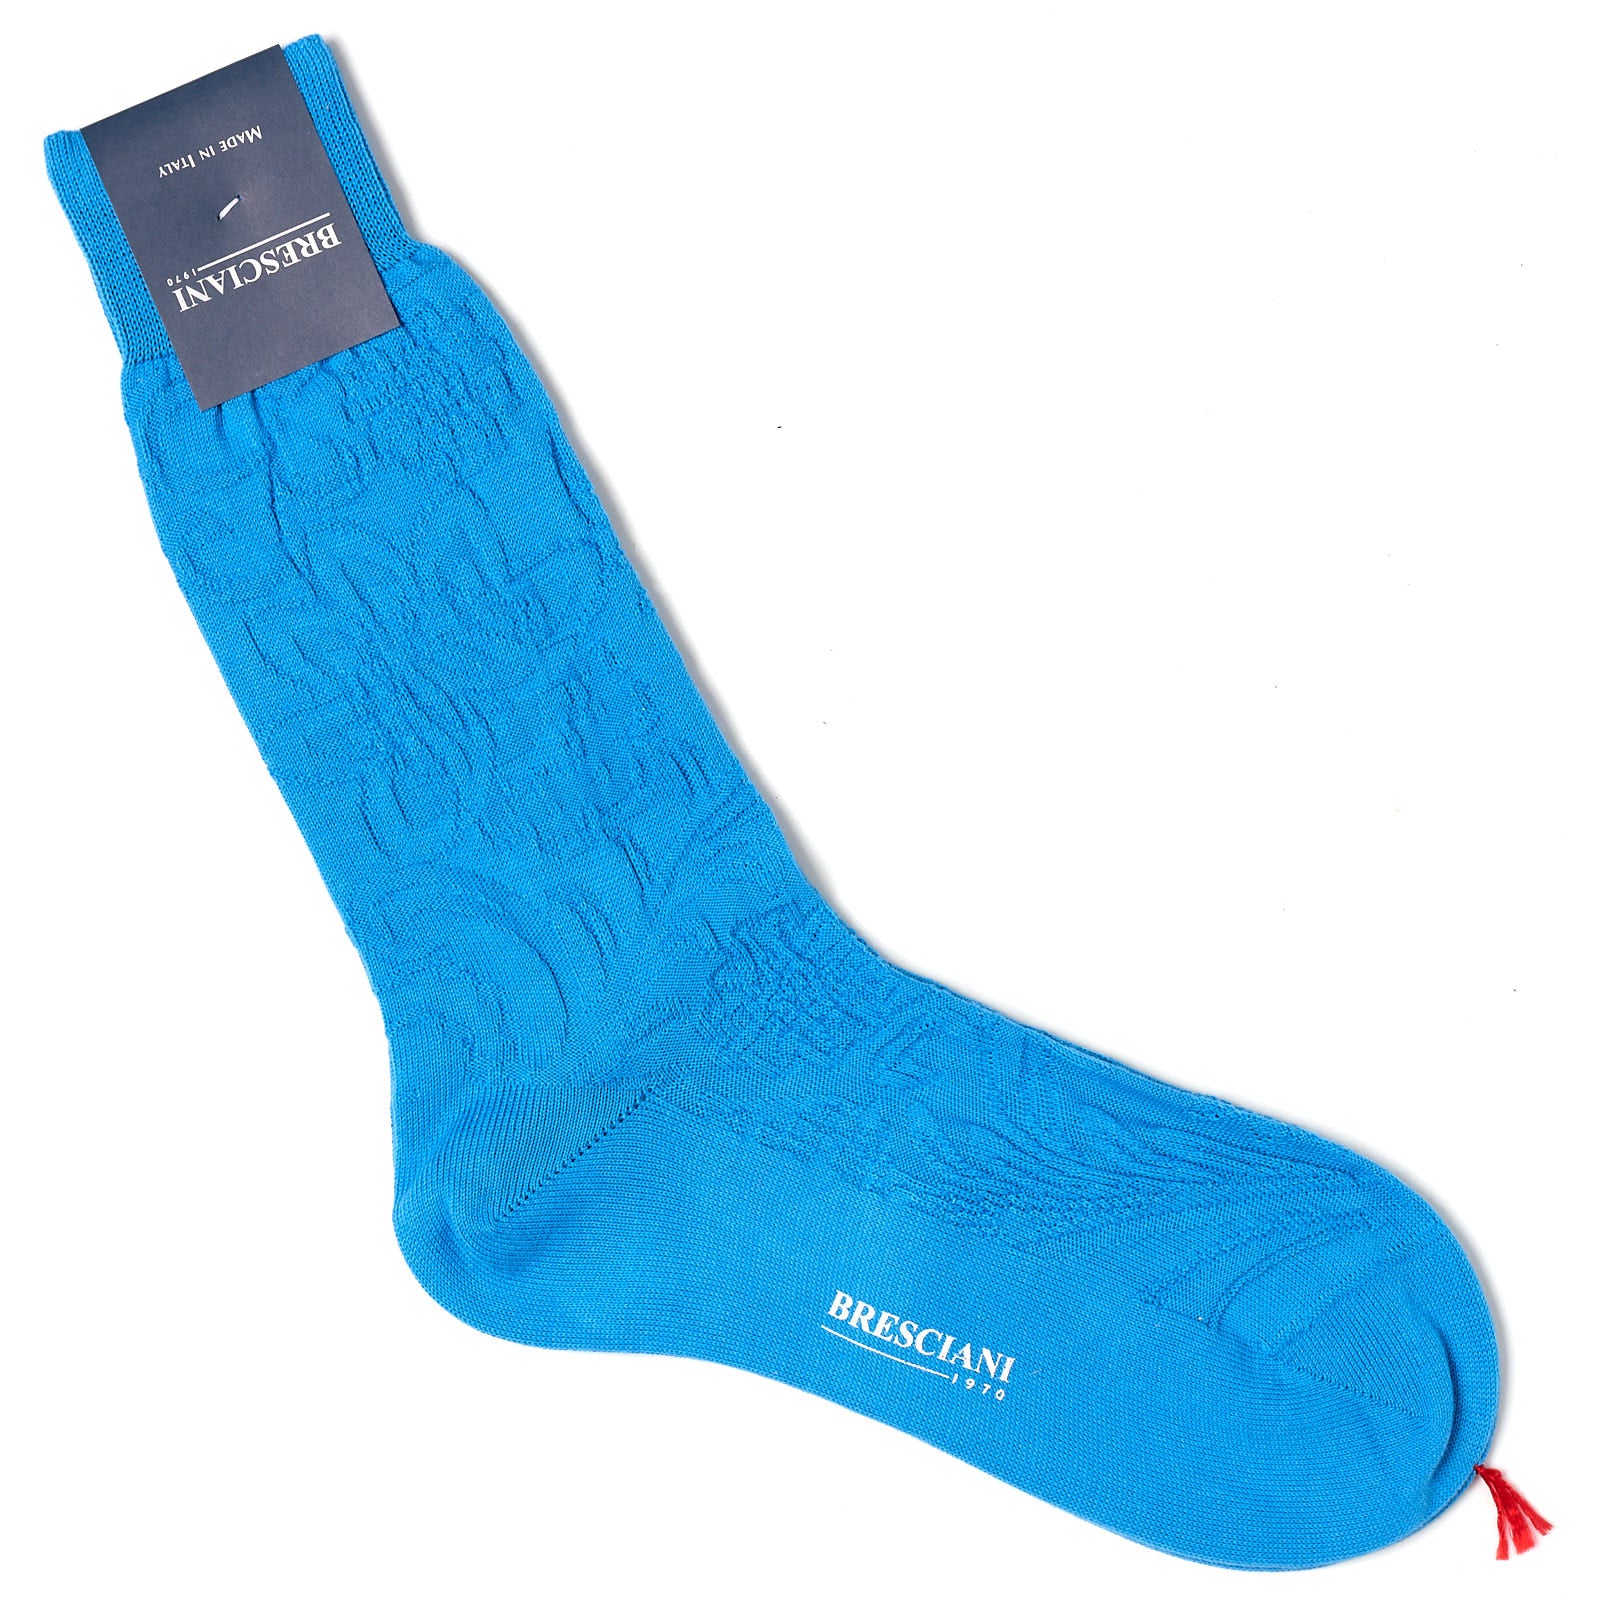 BRESCIANI Cotton Stitch Pattern Design Mid Calf Length Socks US M-L BRESCIANI